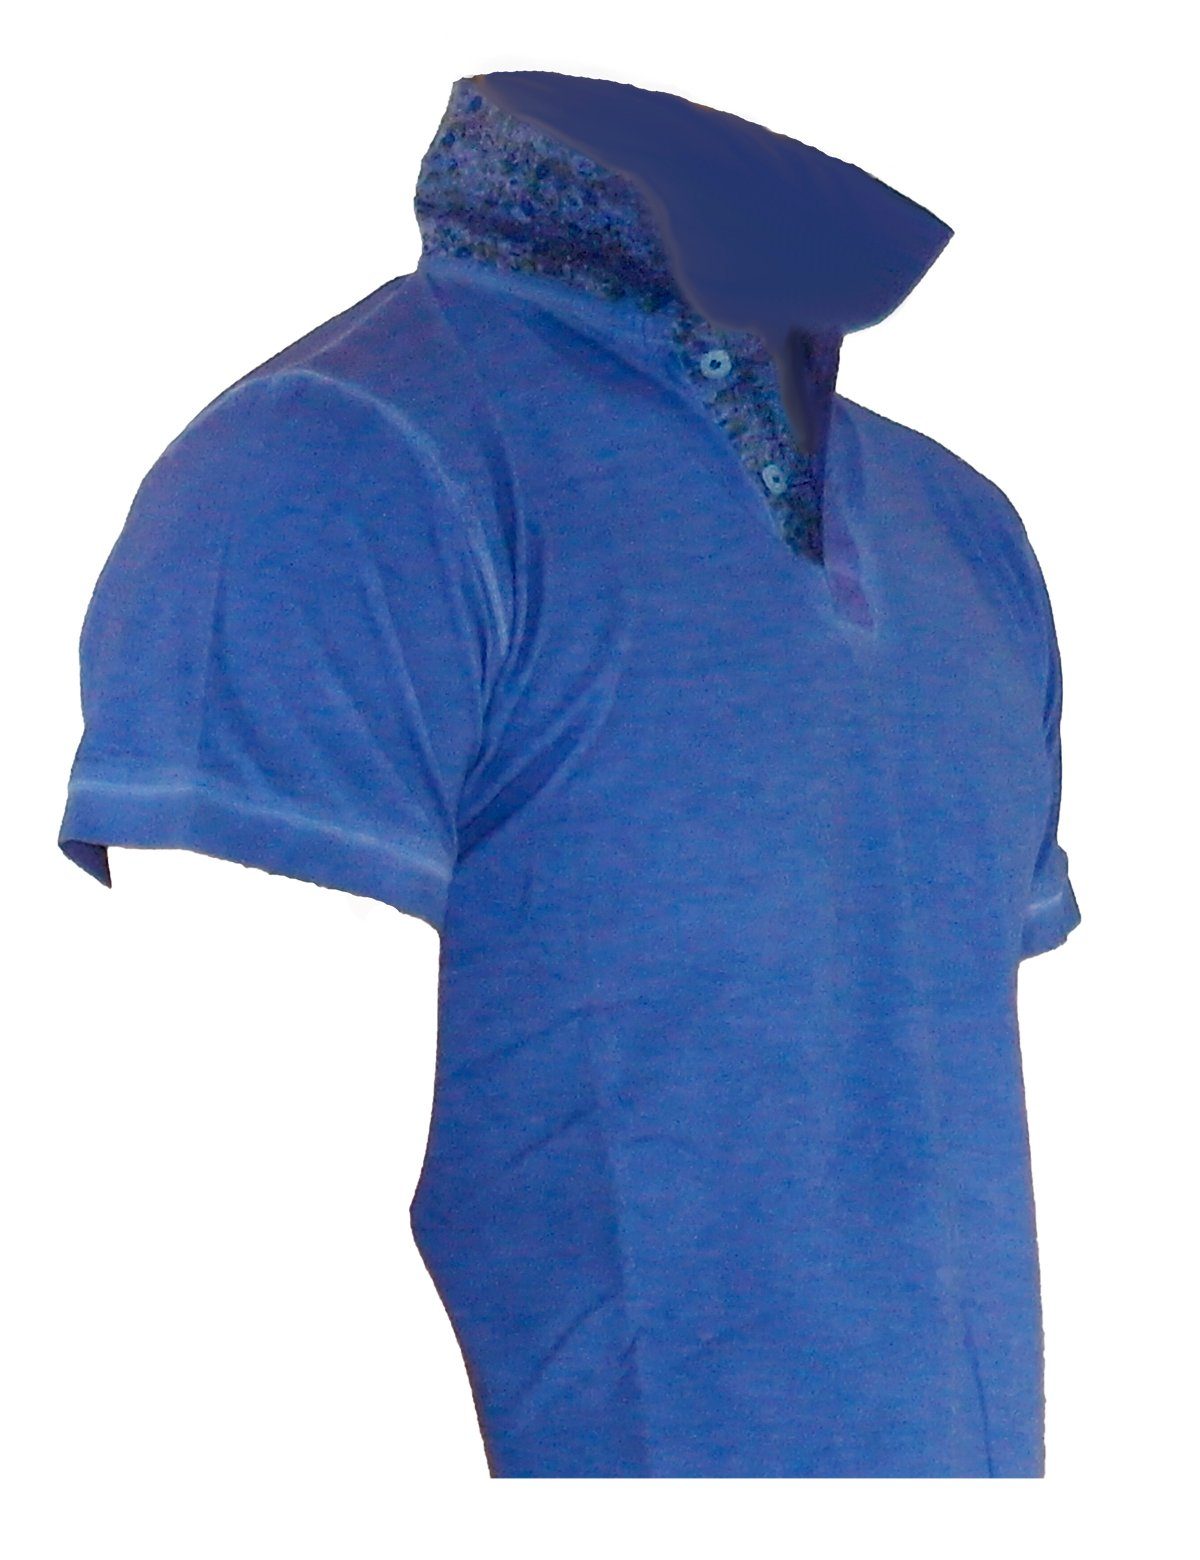 Tank Herren Shirt Kurzarm Top Figurbetont T-Shirt Poloshirt Blau YESET Poloshirt Hemd A810